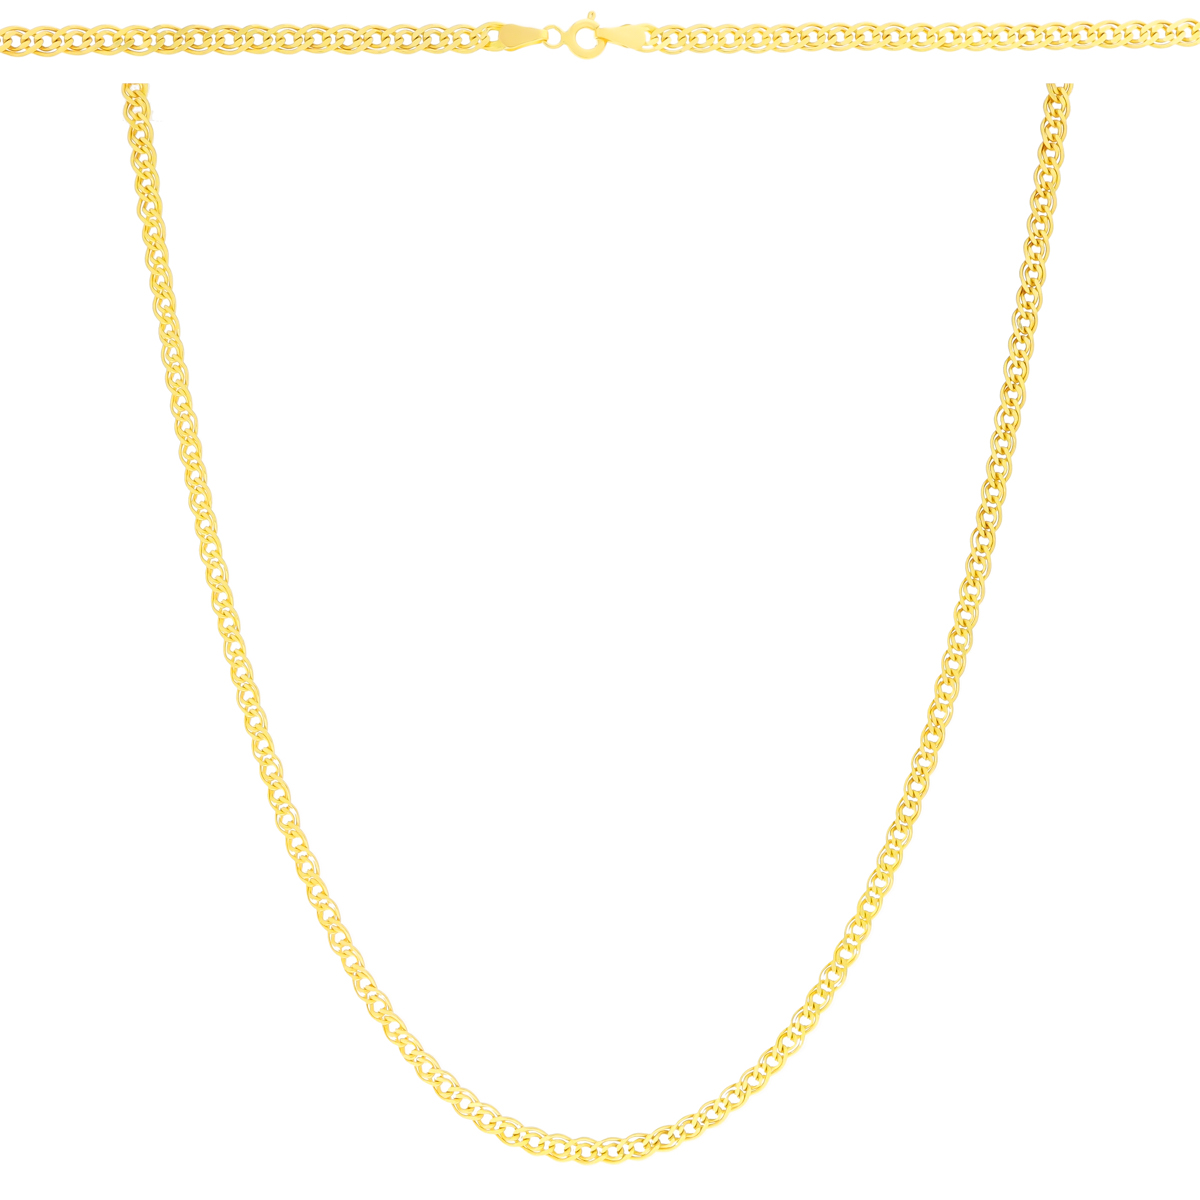 Złoty łańcuszek Monaliza 55cm pr. 585